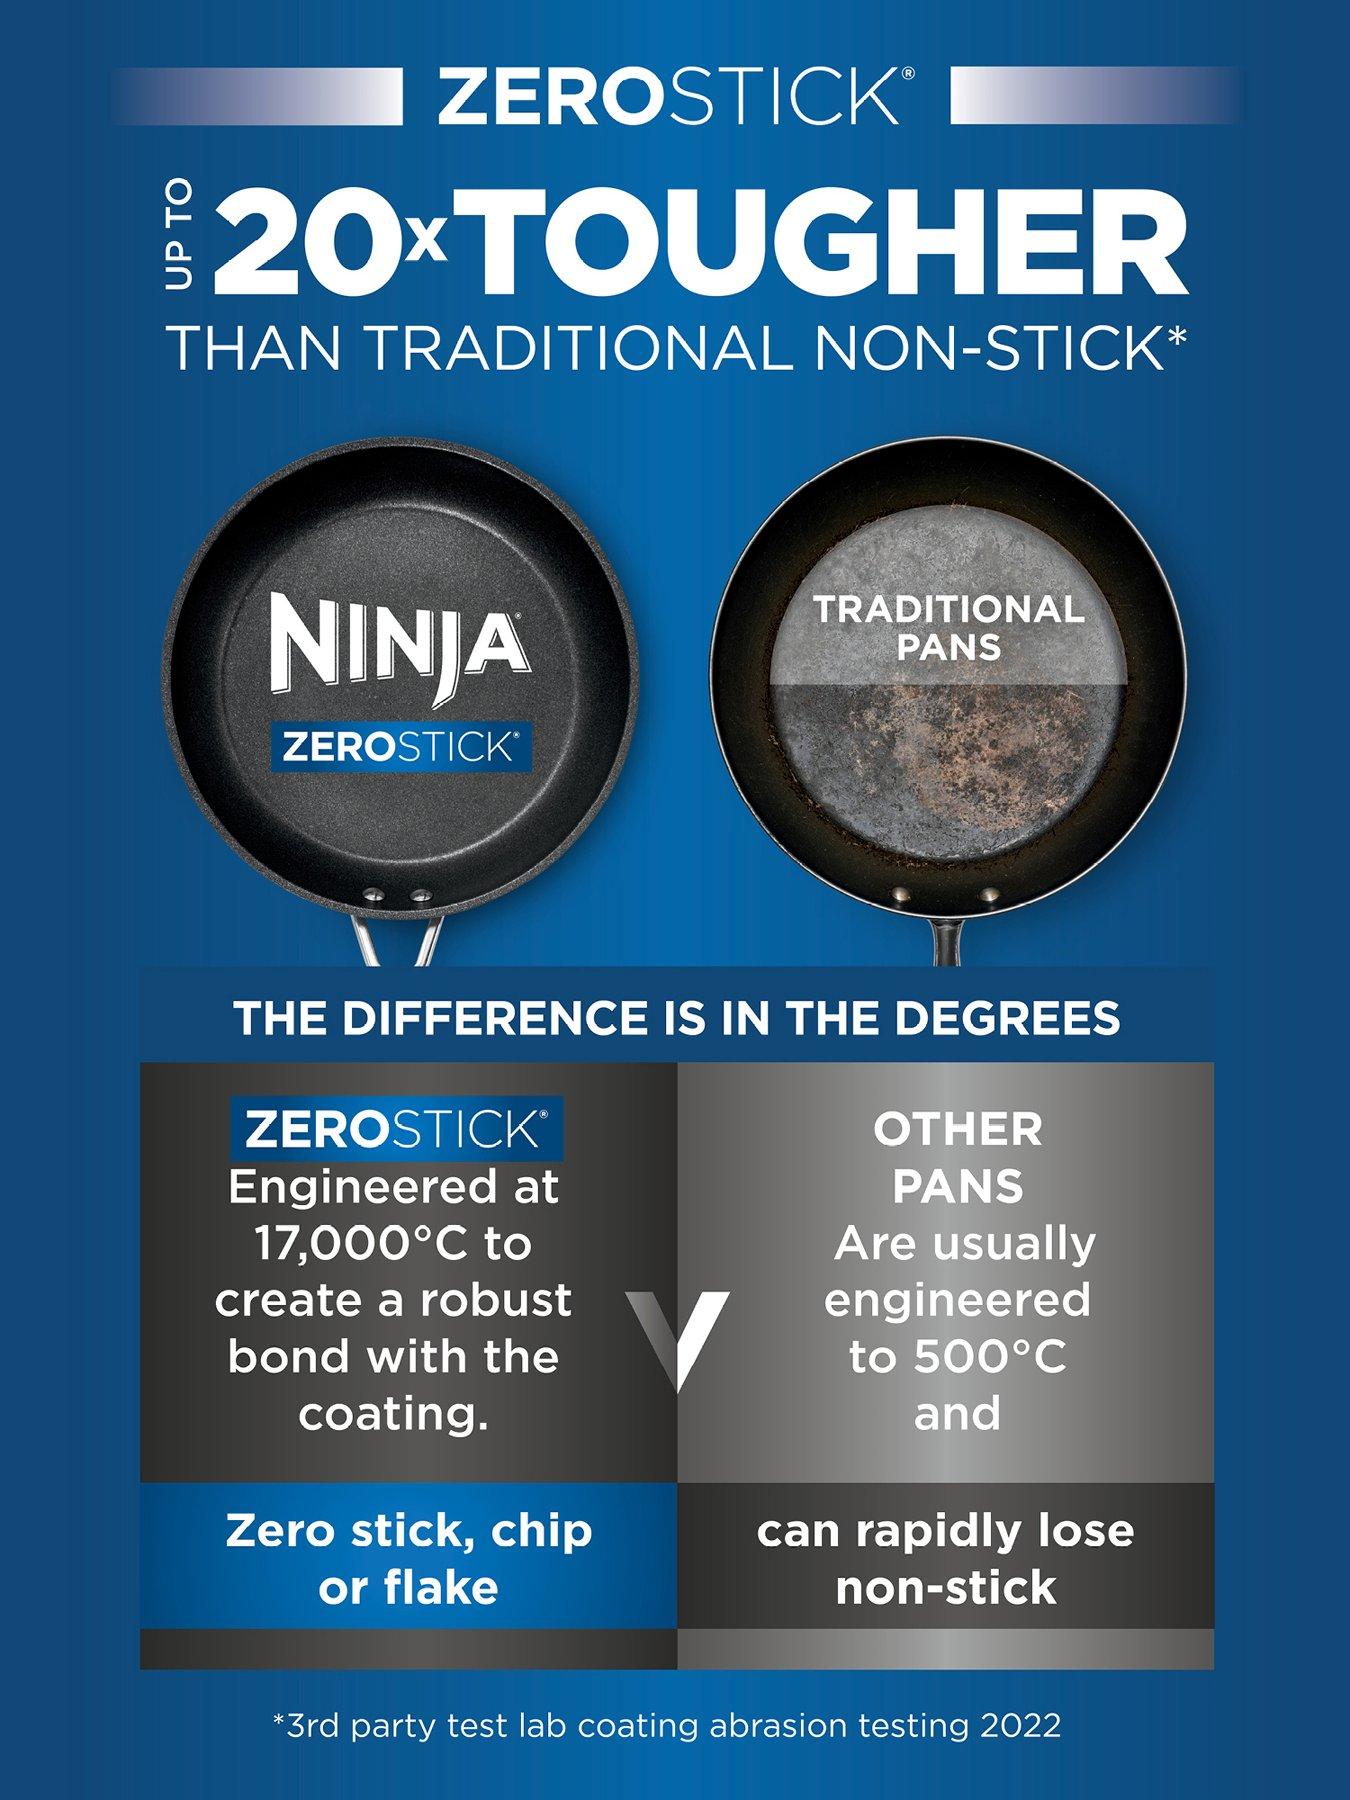 NINJA Zerostick Essentials 18cm Saucepan With Lid - C10218UK 